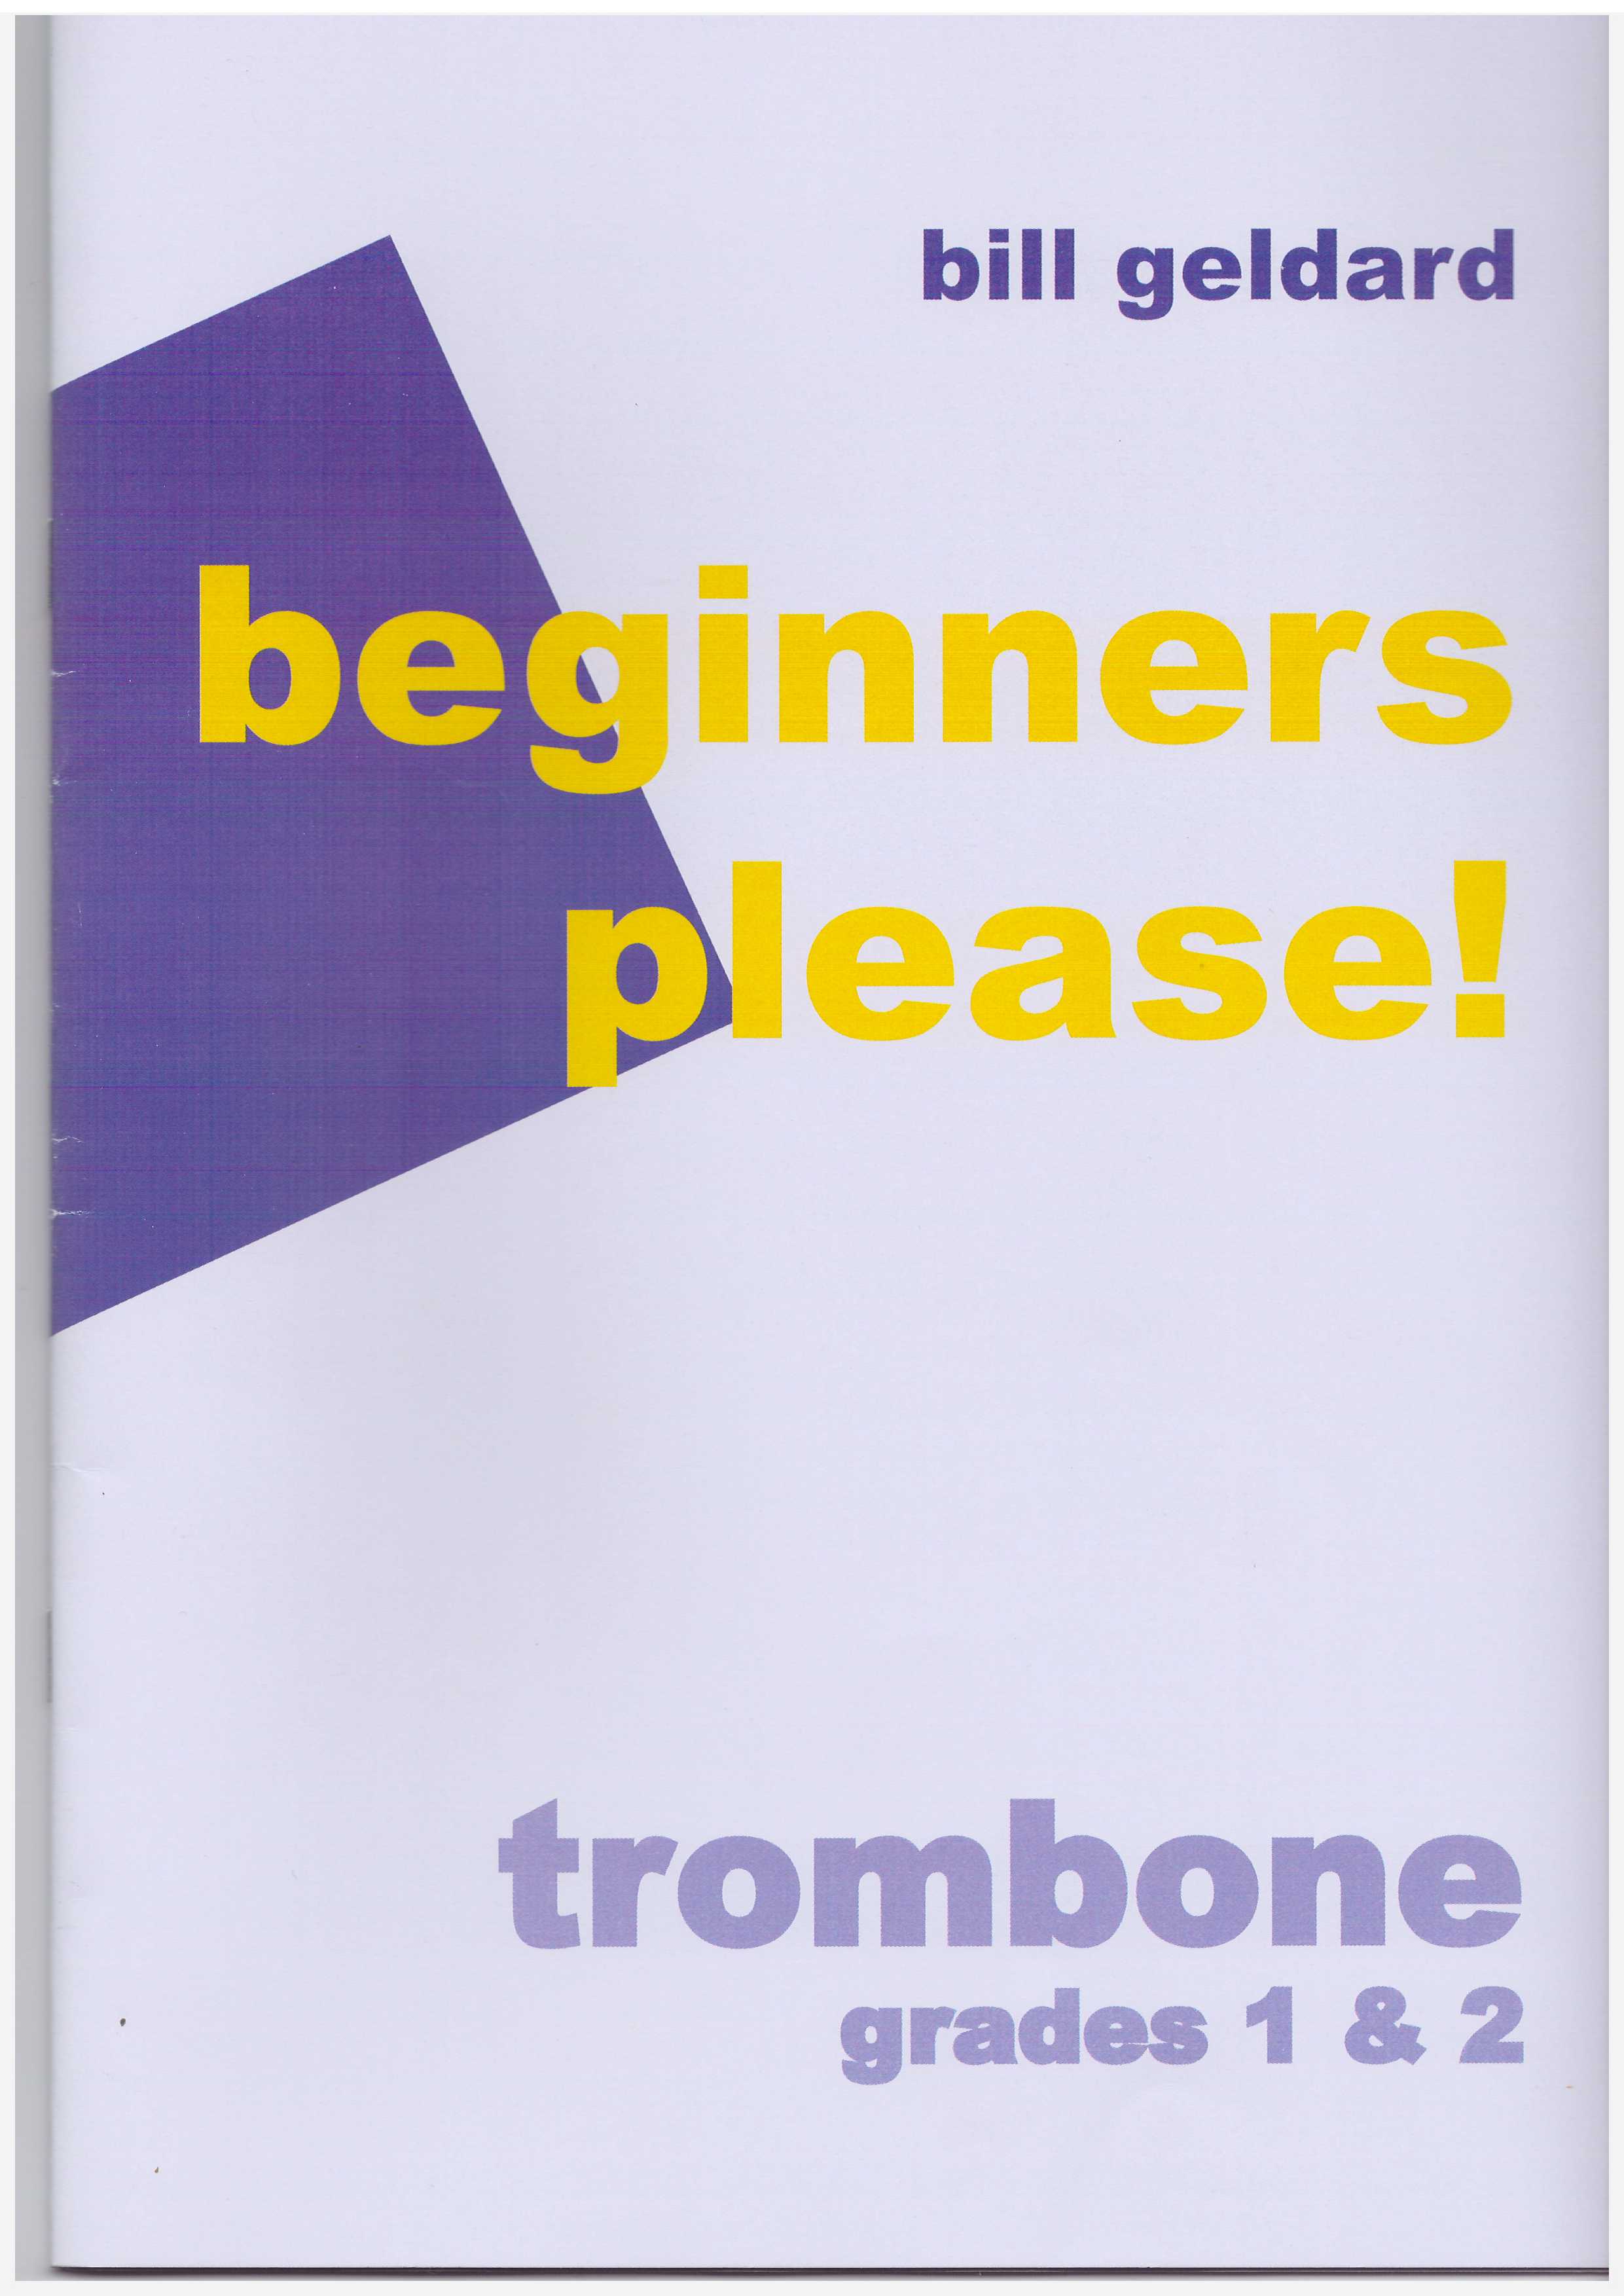 Beginners please! for Trombone G1 & 2